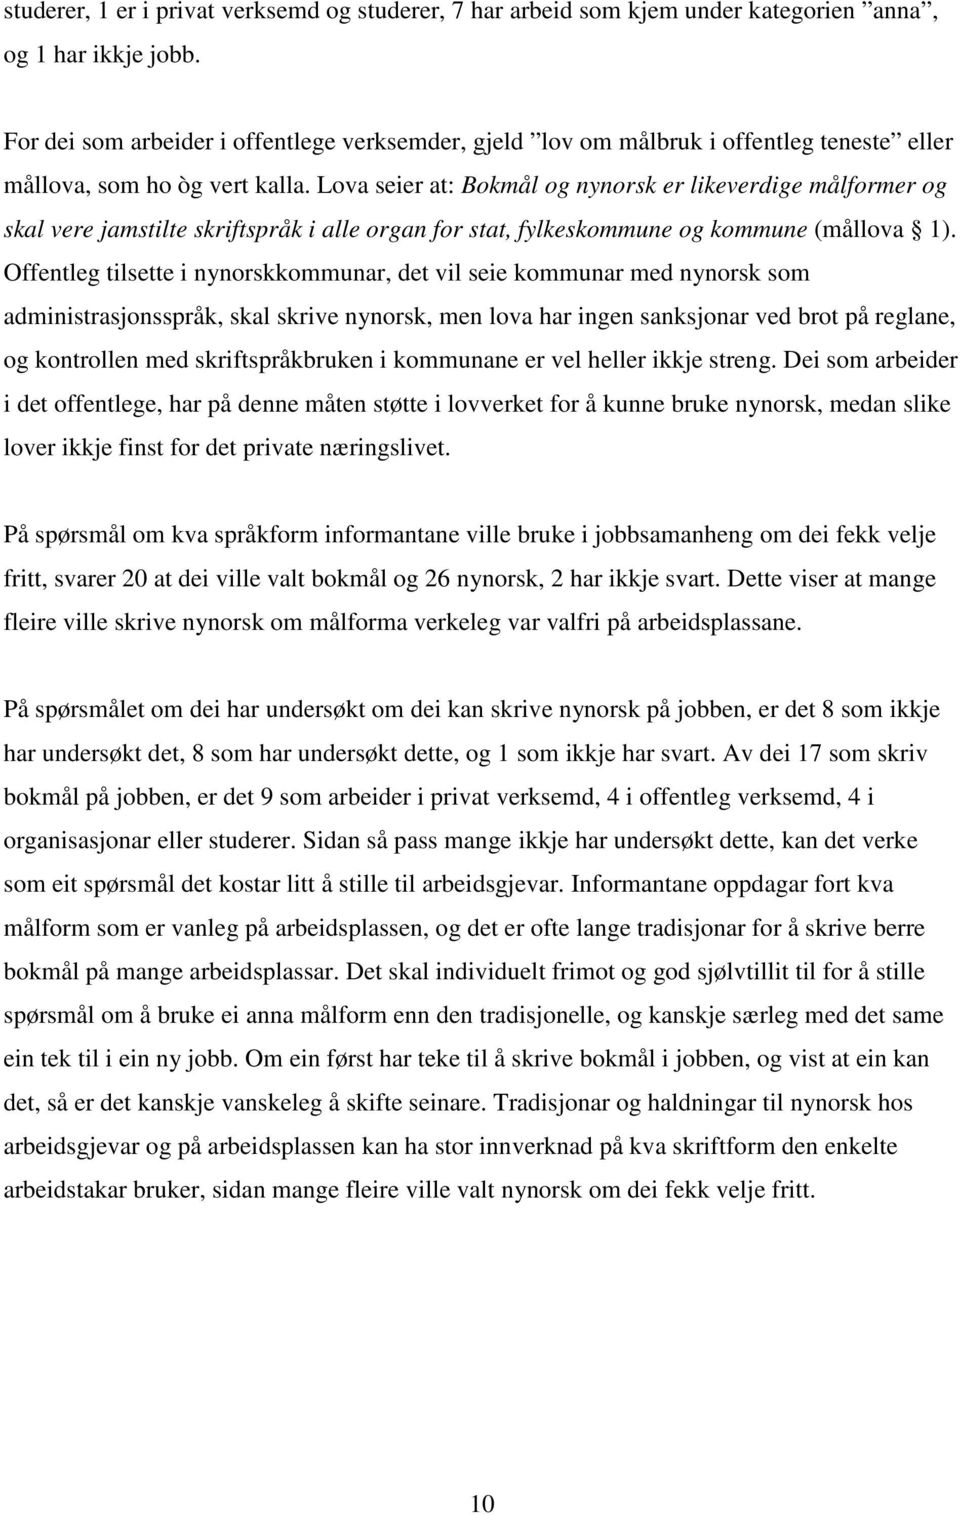 Lova seier at: Bokmål og nynorsk er likeverdige målformer og skal vere jamstilte skriftspråk i alle organ for stat, fylkeskommune og kommune (mållova 1).